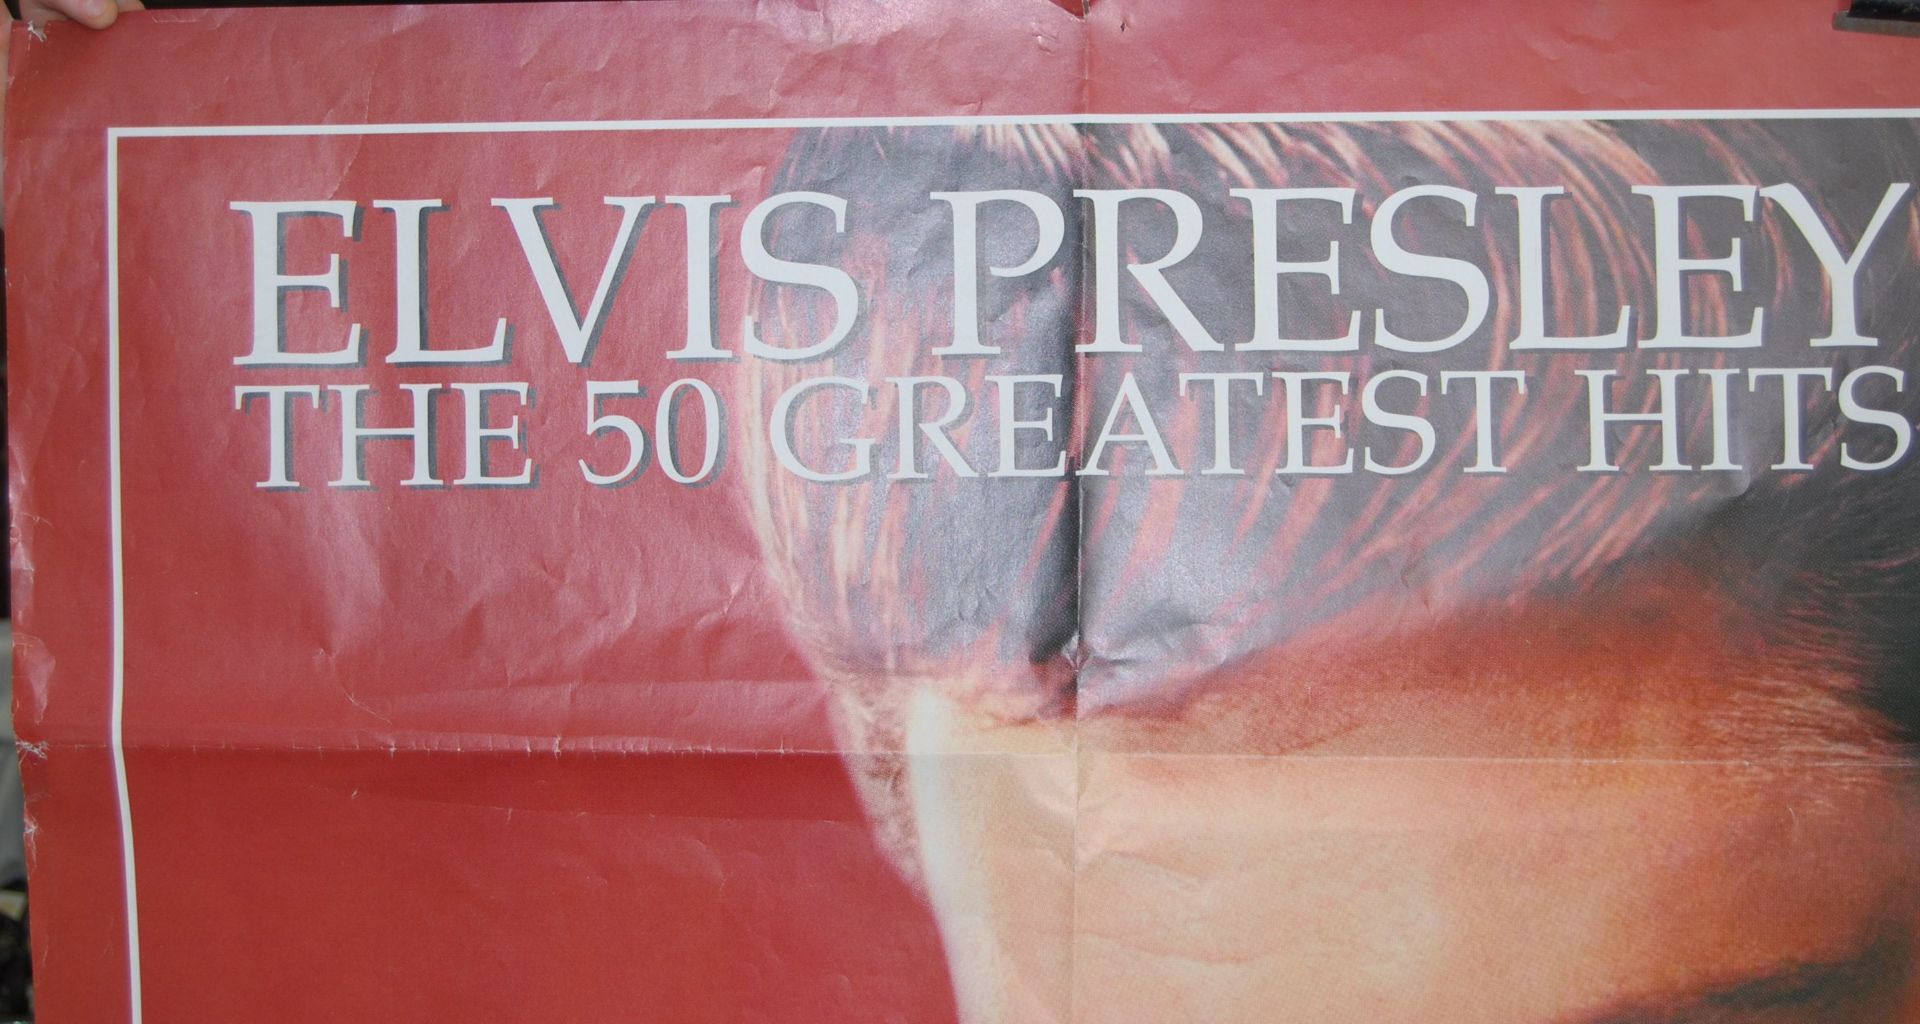 ELVIS PRESLEY IN STORE SHOP DISPLAY ADVERTISING POSTER - Image 2 of 4